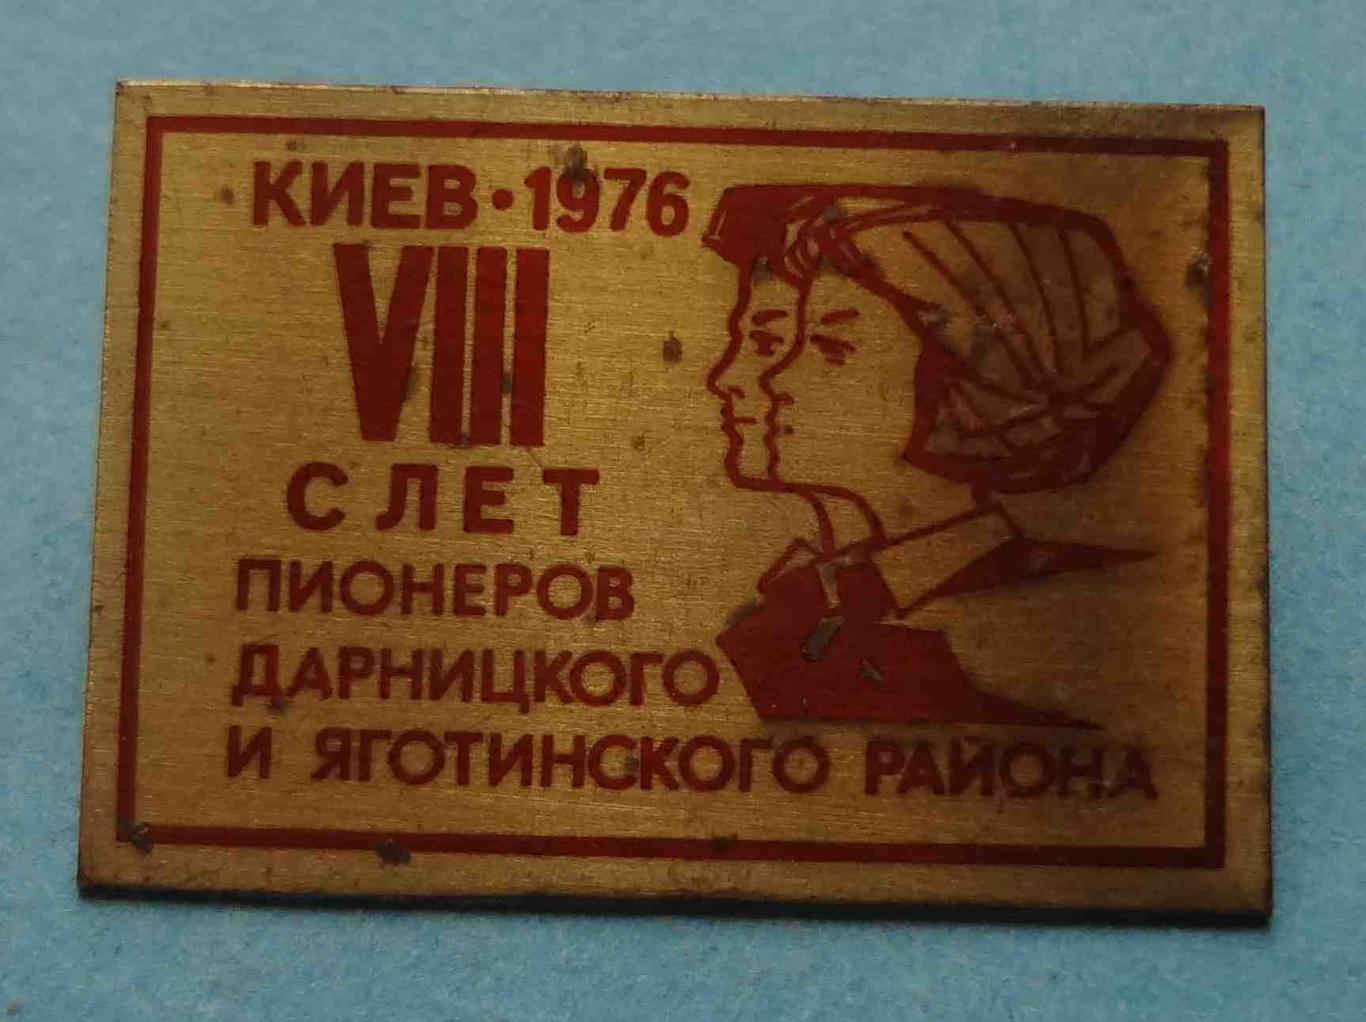 8 слет пионеров Дарницкого и Яготинского района Киев 1976 (27)